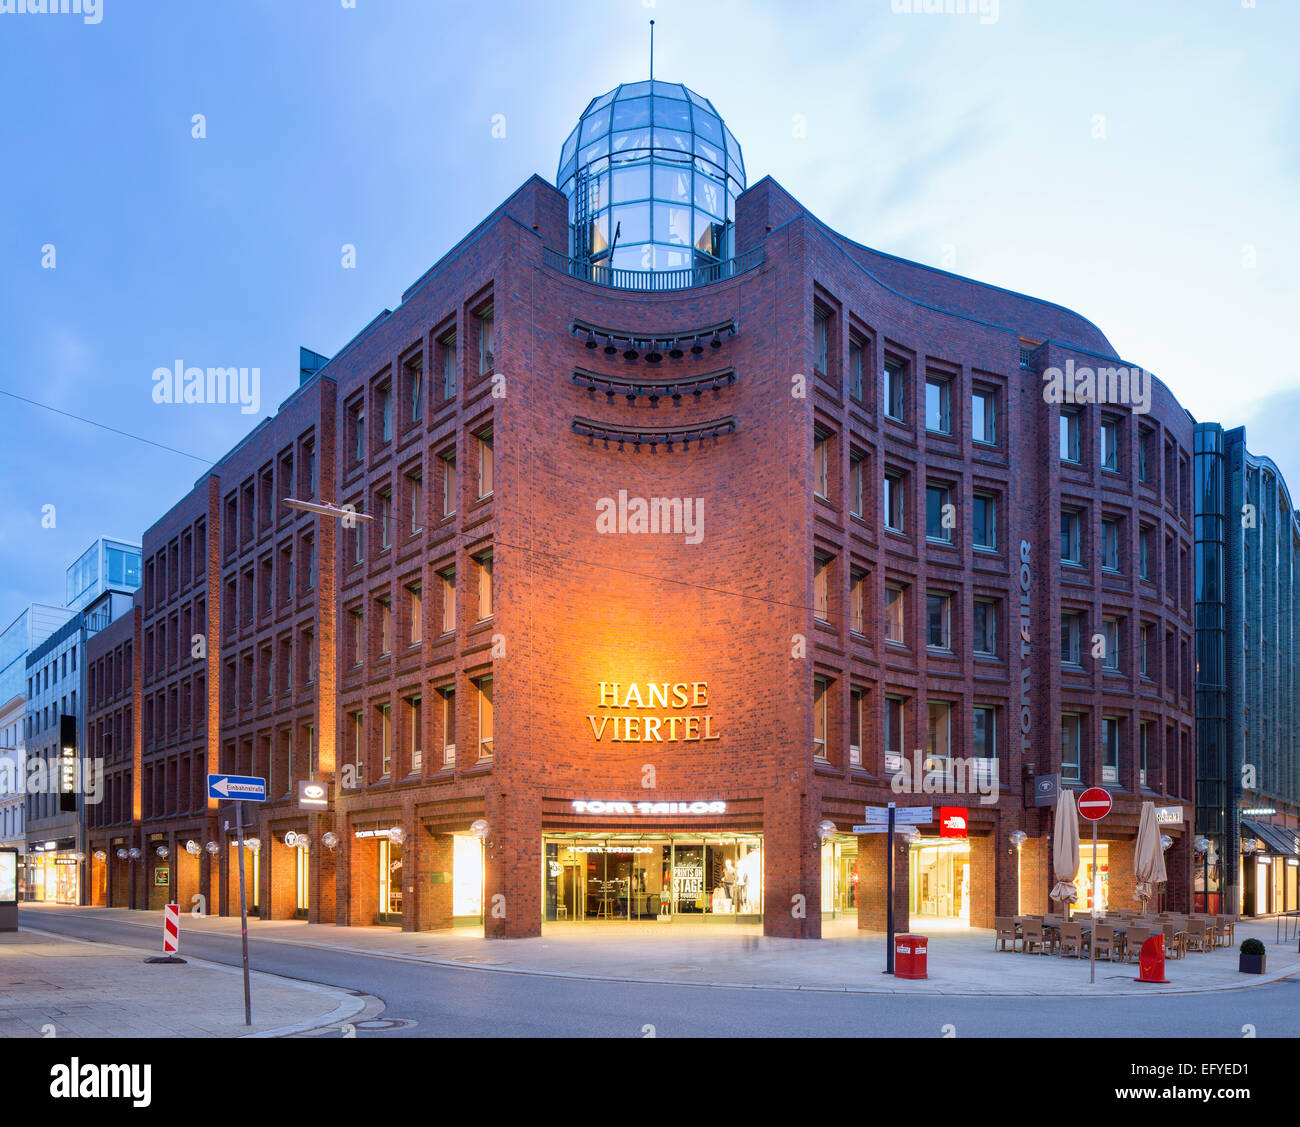 Galería comercial Hanse-Viertel, oficina y edificio comercial, Hamburgo, Alemania. Foto de stock